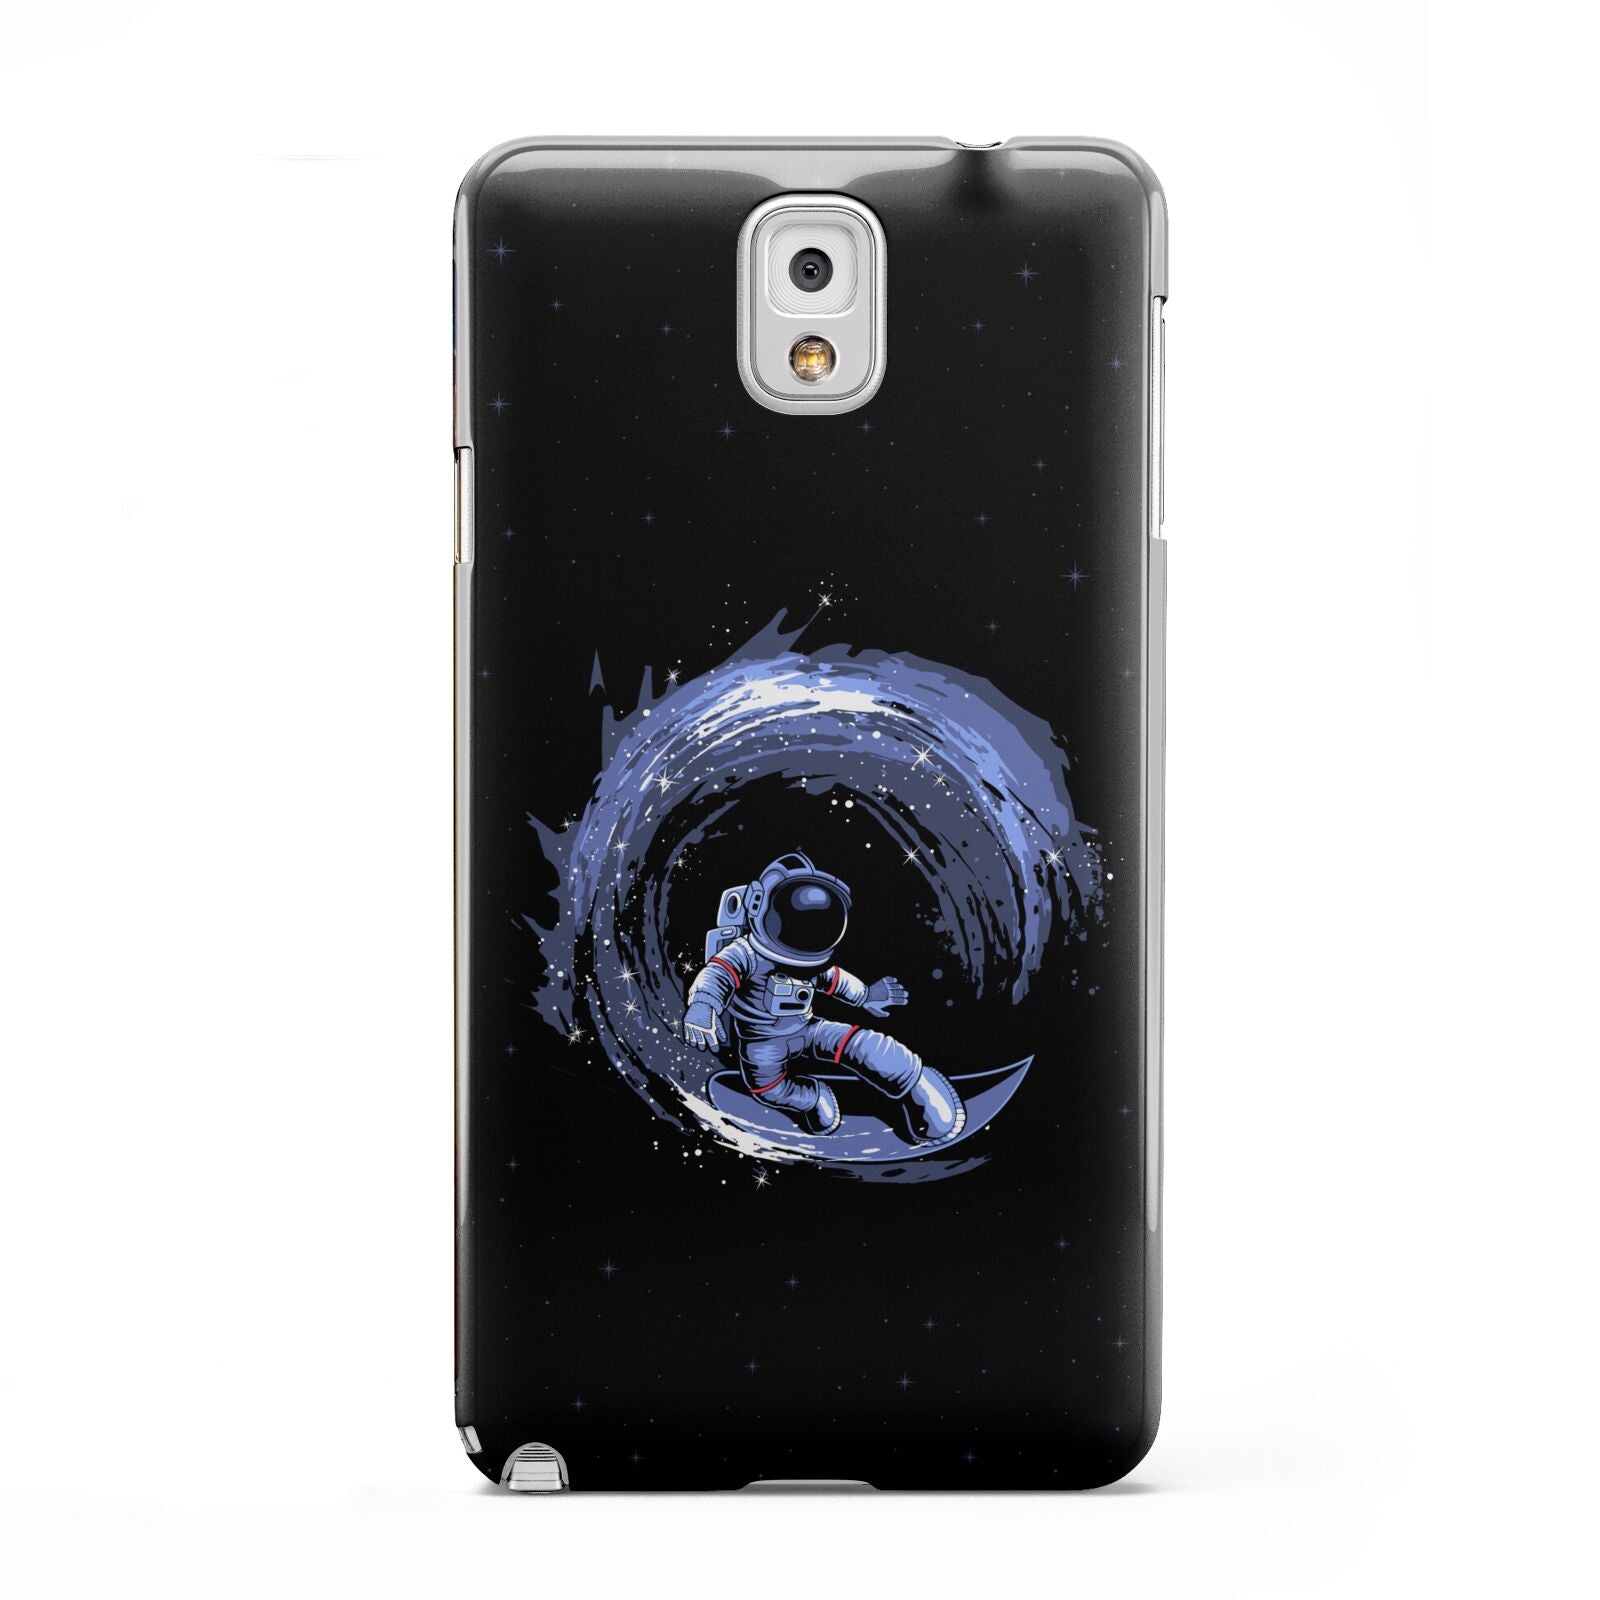 Surfing Astronaut Samsung Galaxy Note 3 Case